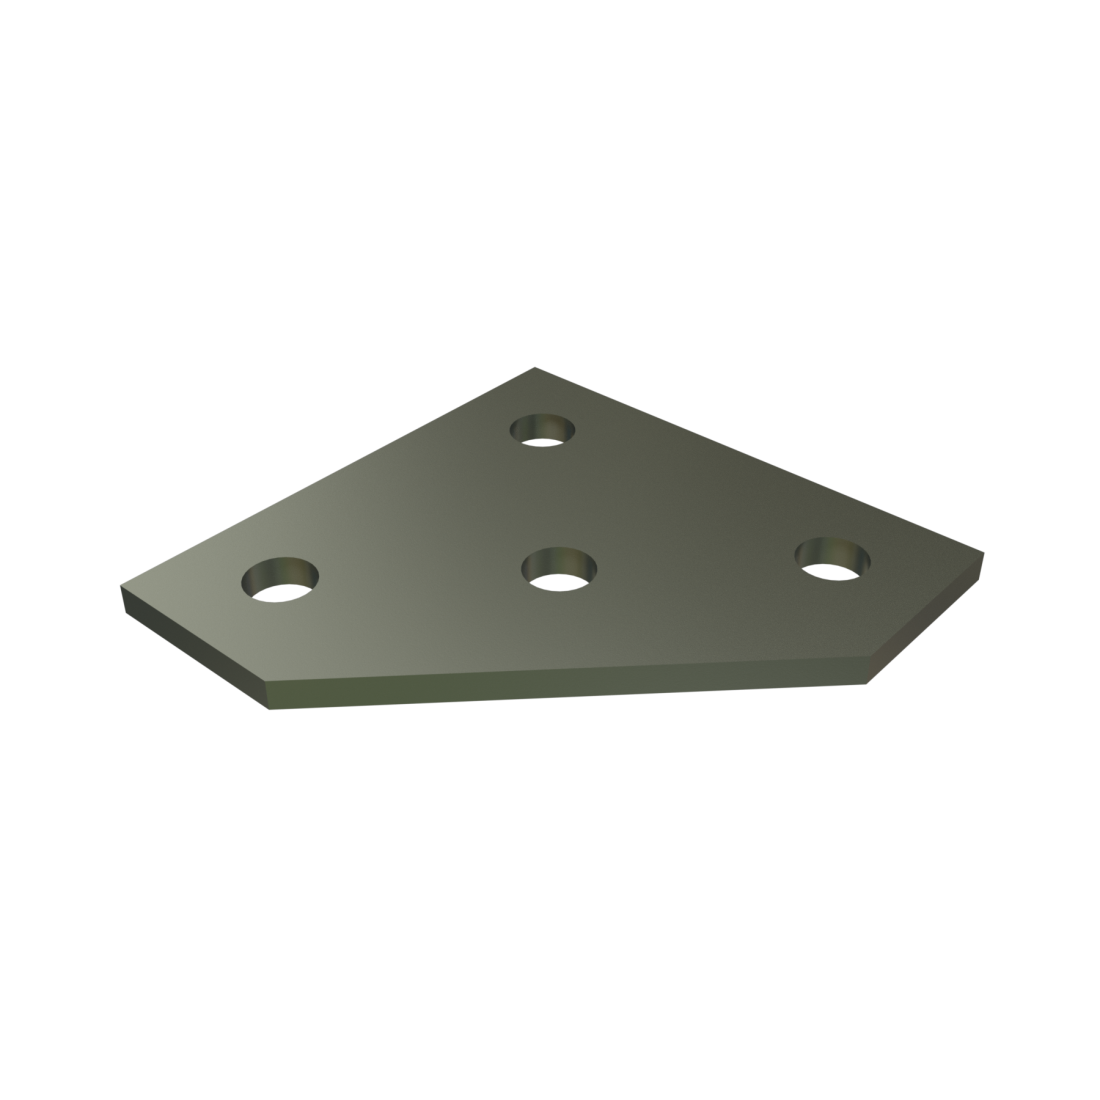 Unistrut P1962 - 4 Hole, Flat Plate Fitting